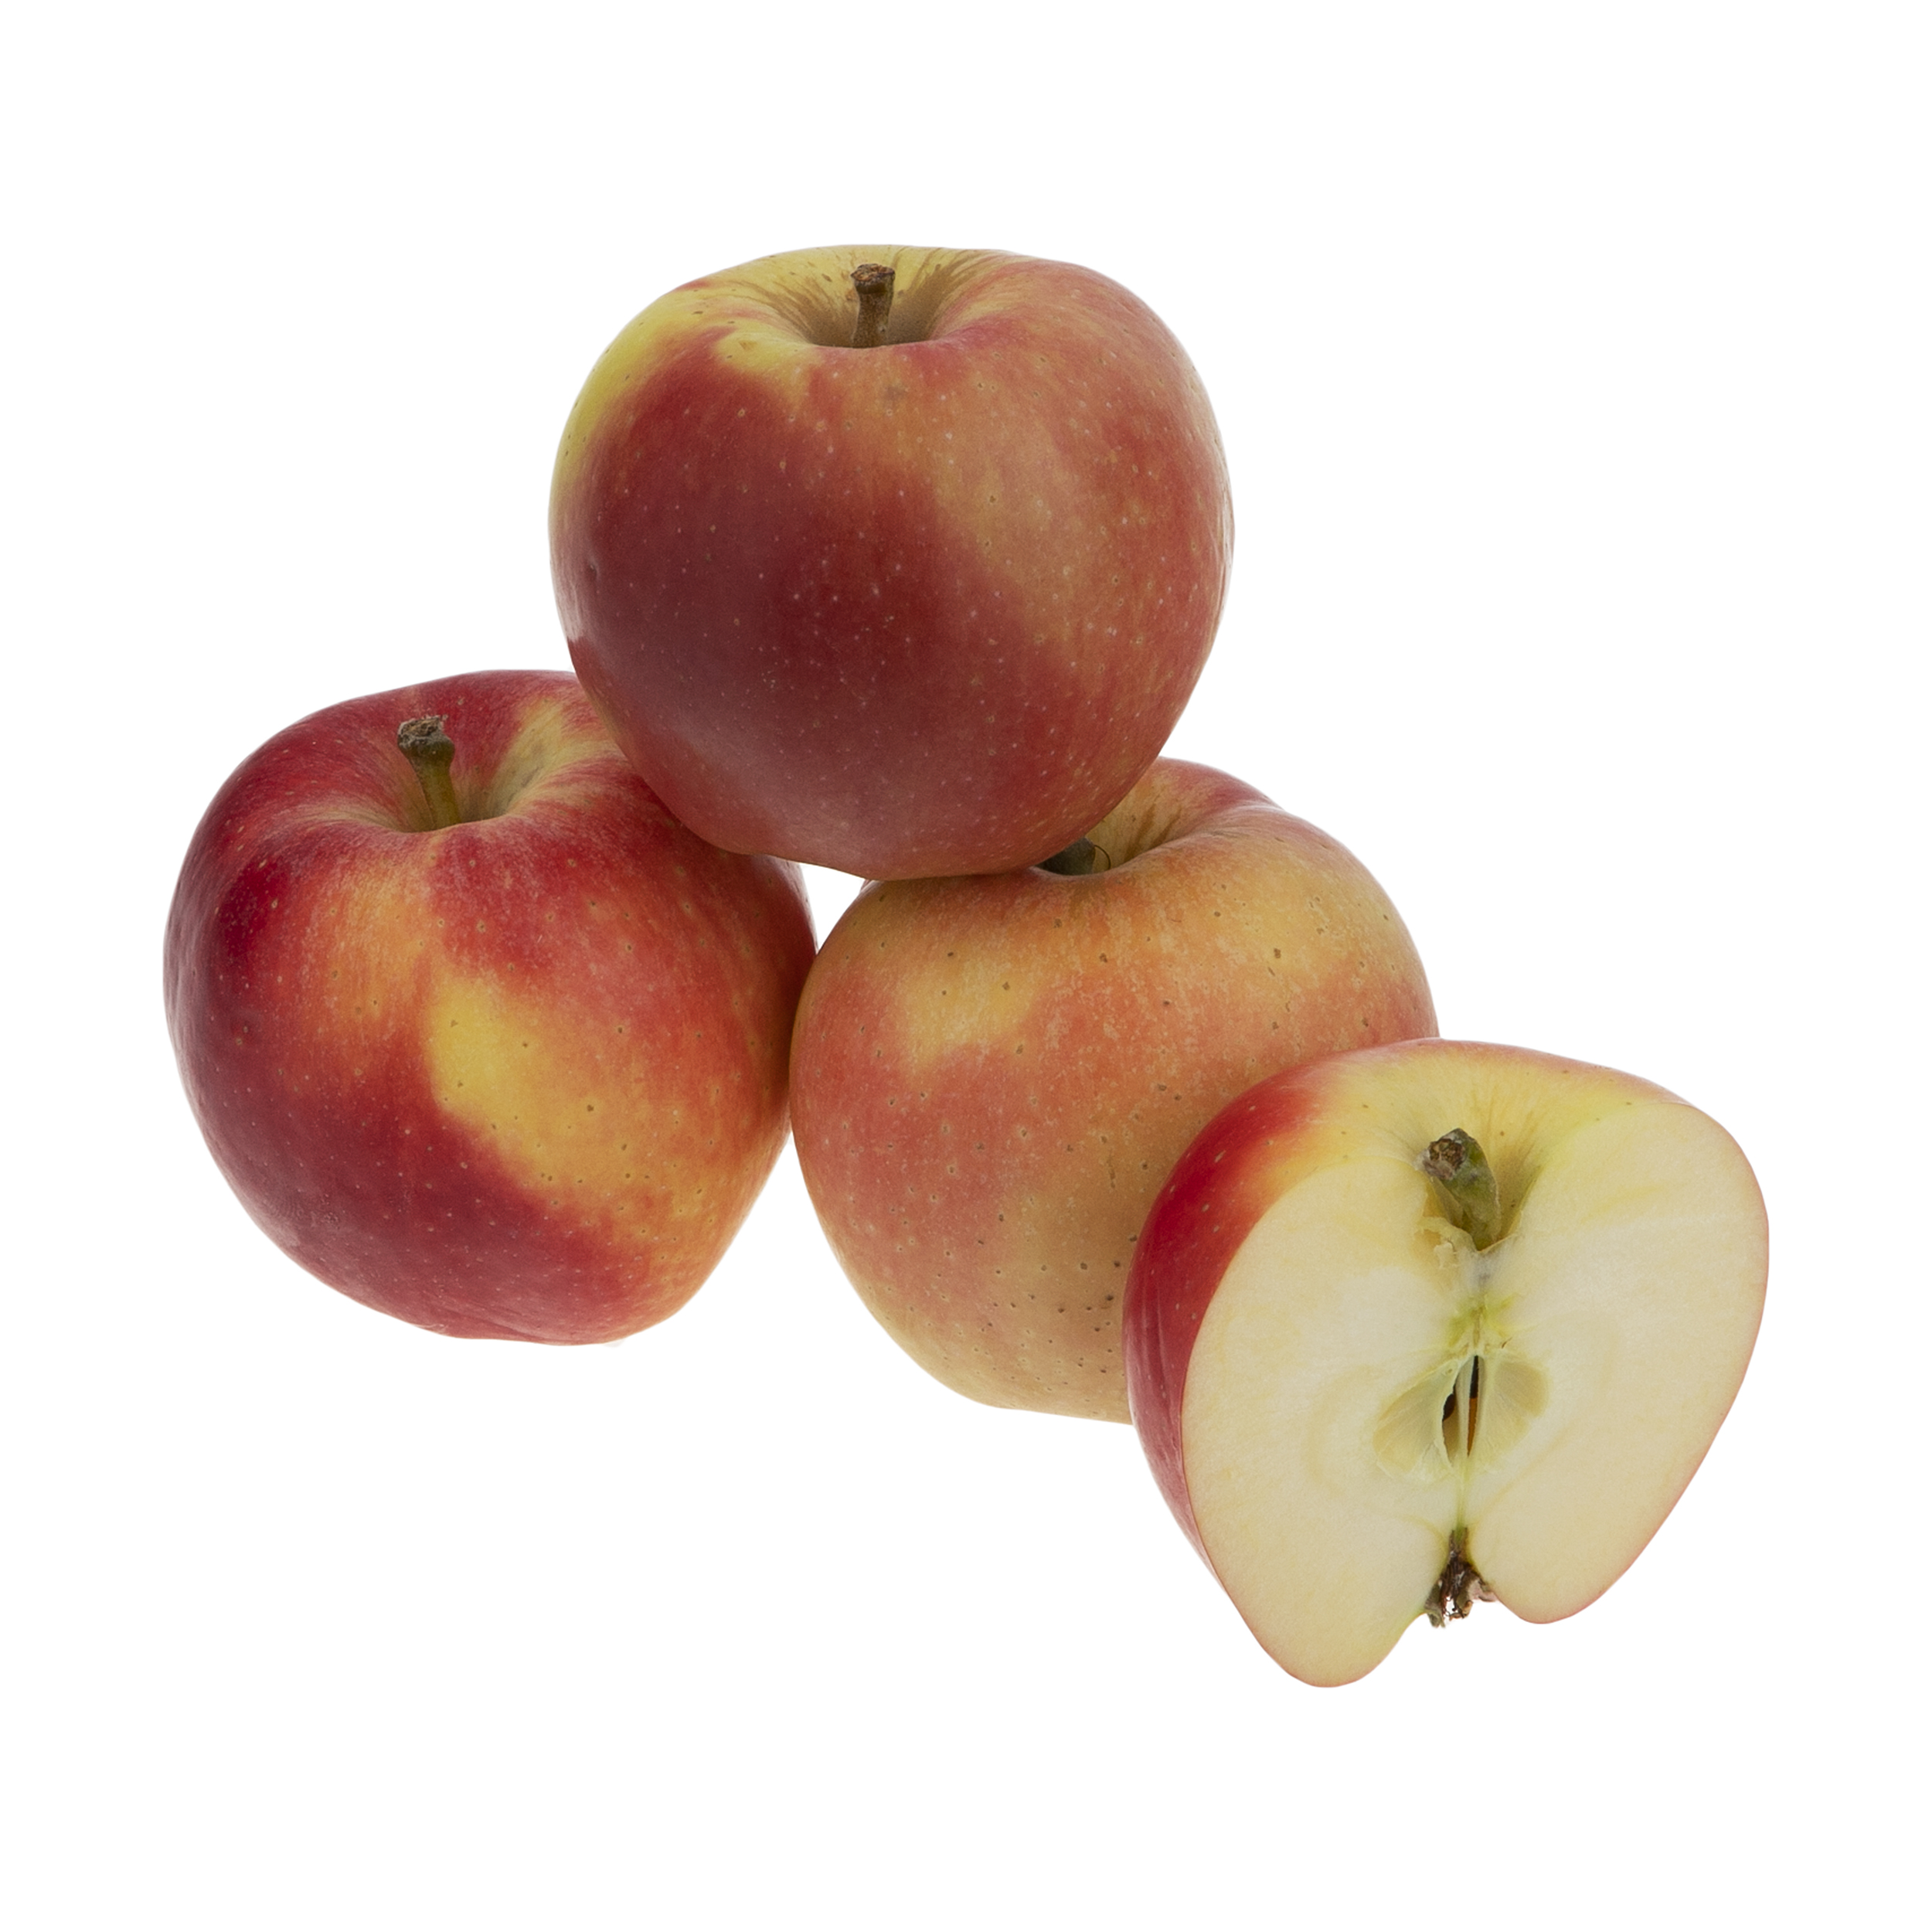 سیب میوکات - 1 کیلوگرم